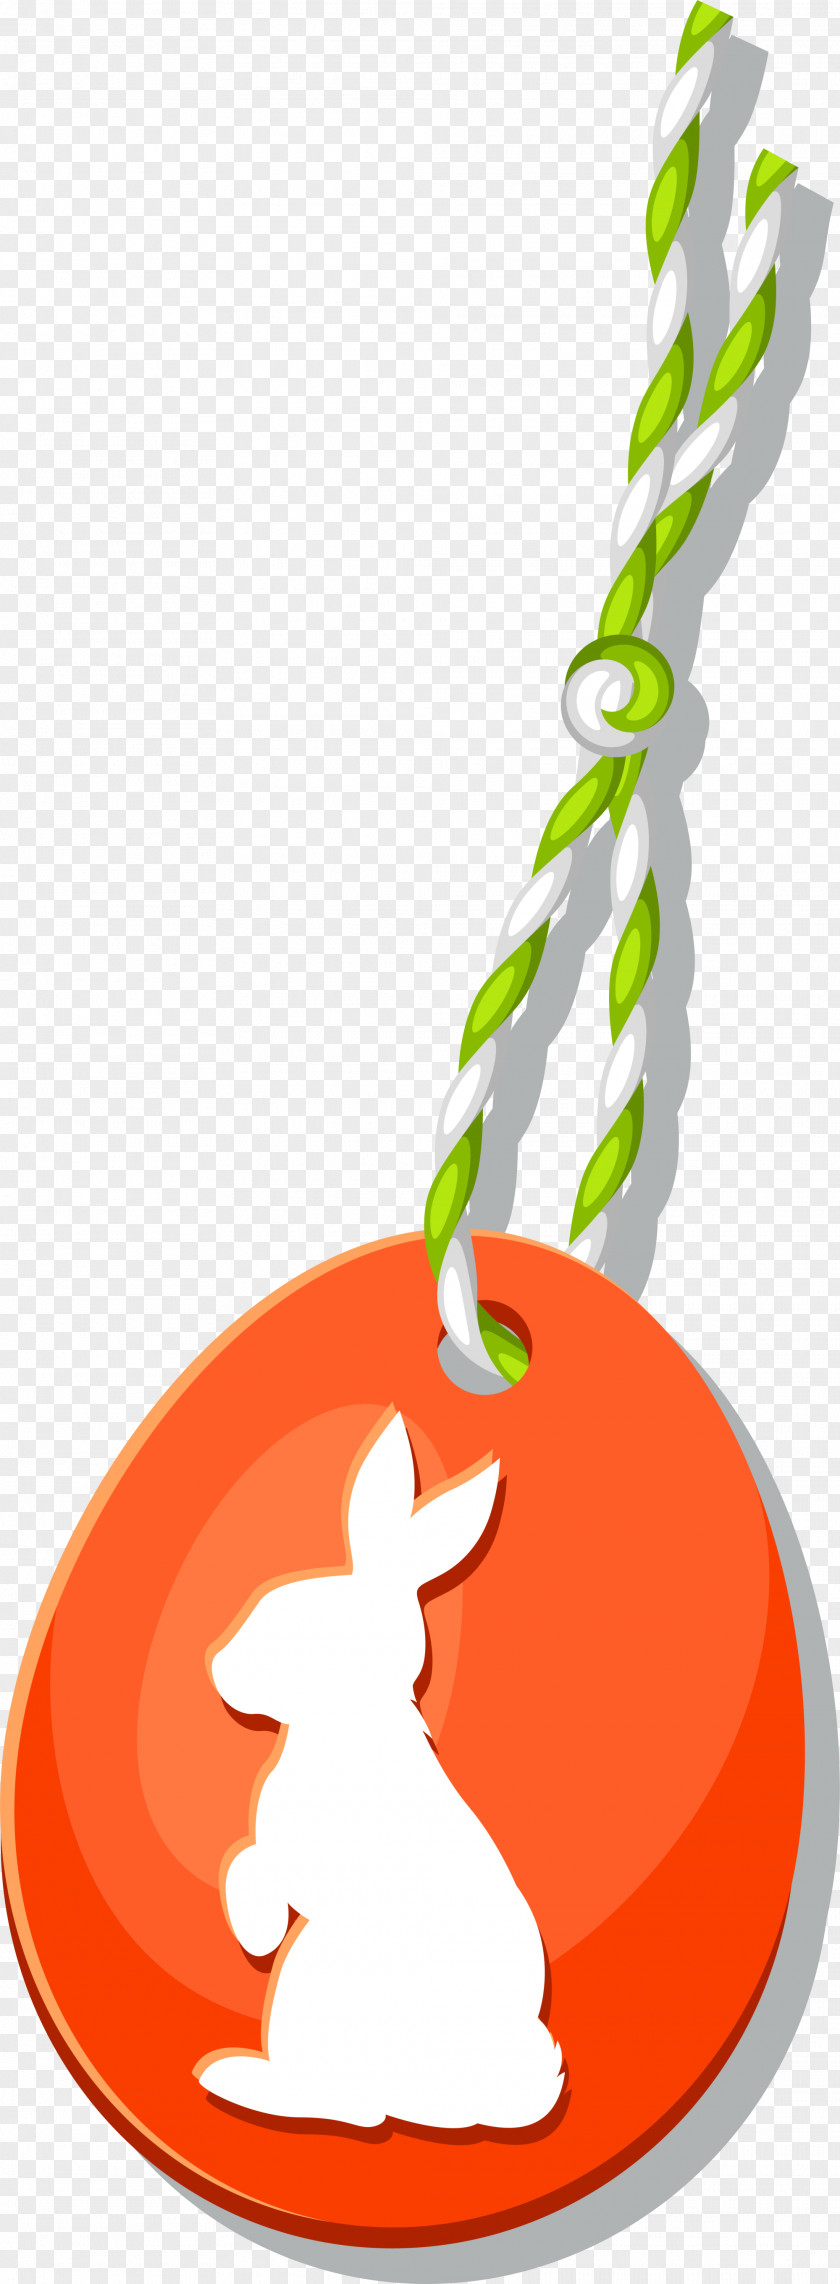 Orange Rabbit Ornaments Clip Art PNG